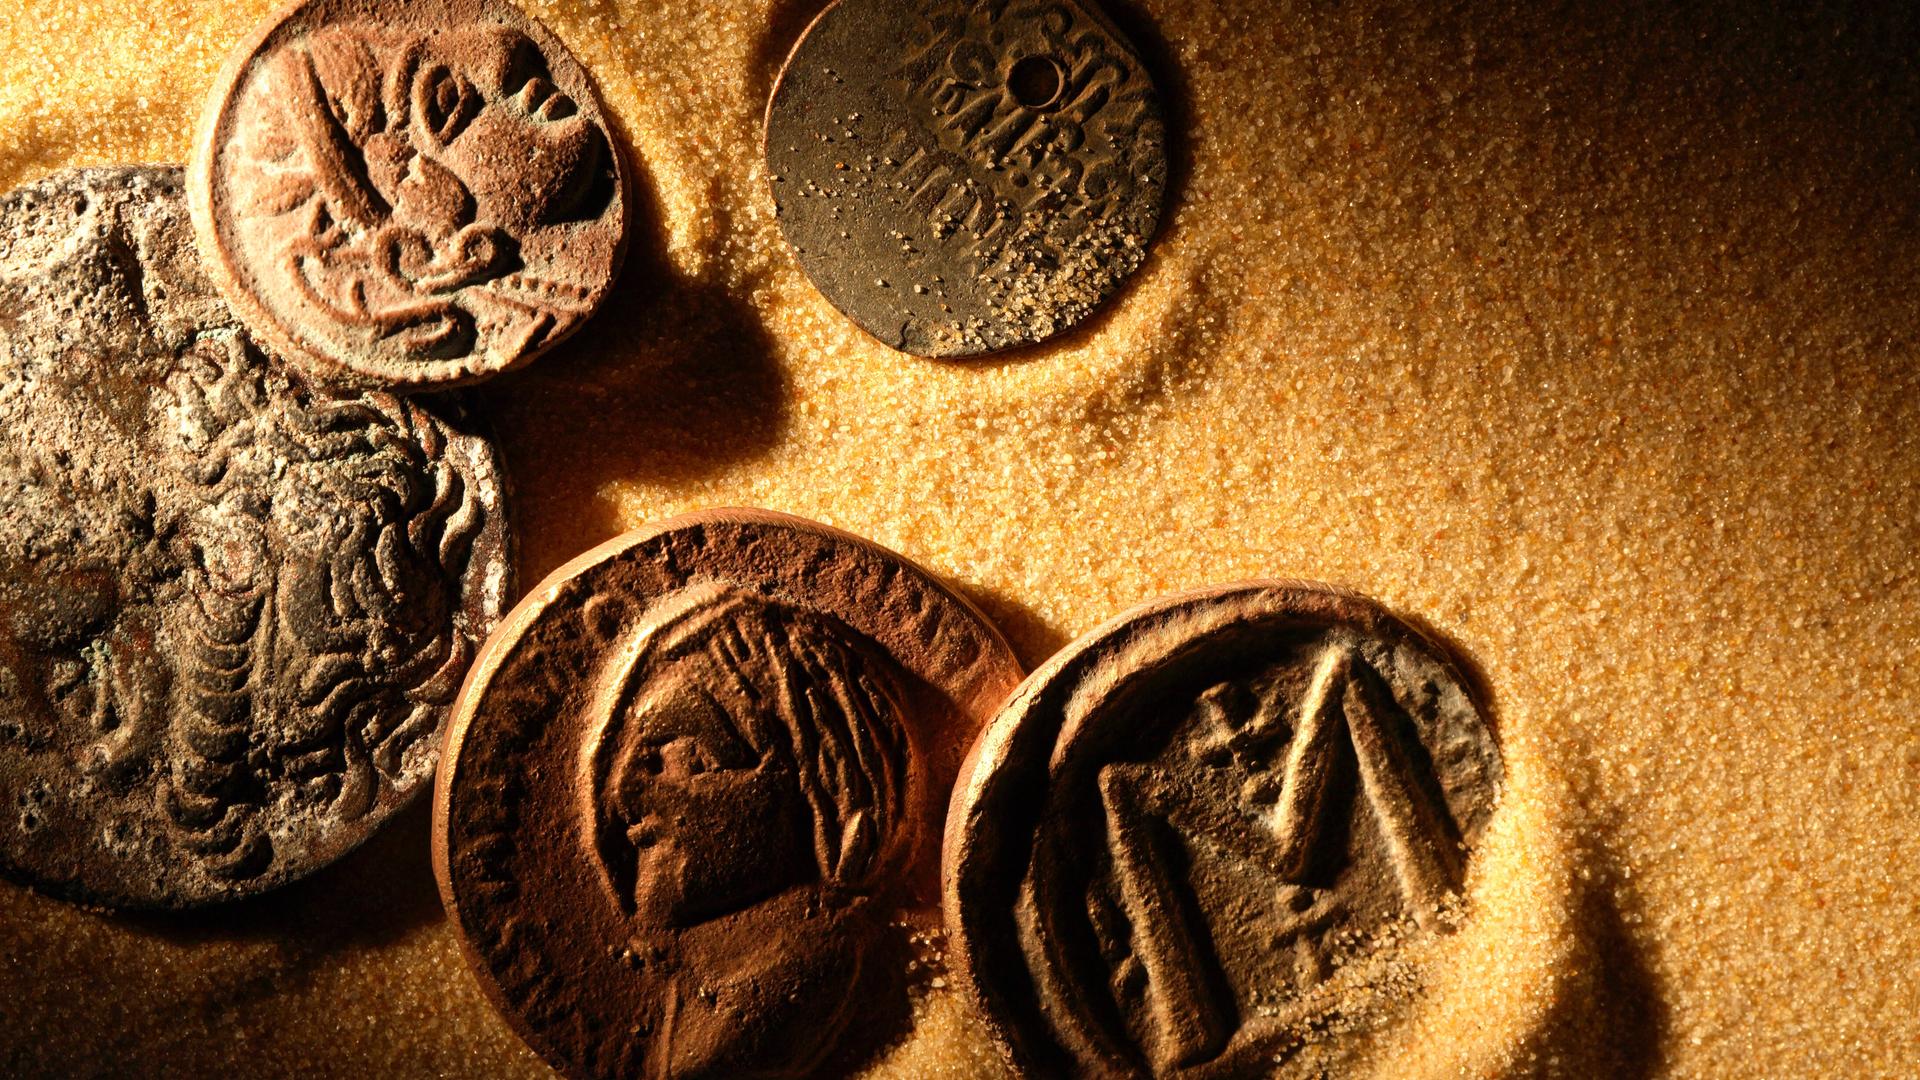 Das Bild zeigt mehrere antik aussehende Münzen, die in gelbem Sand liegen (Symbolbild)